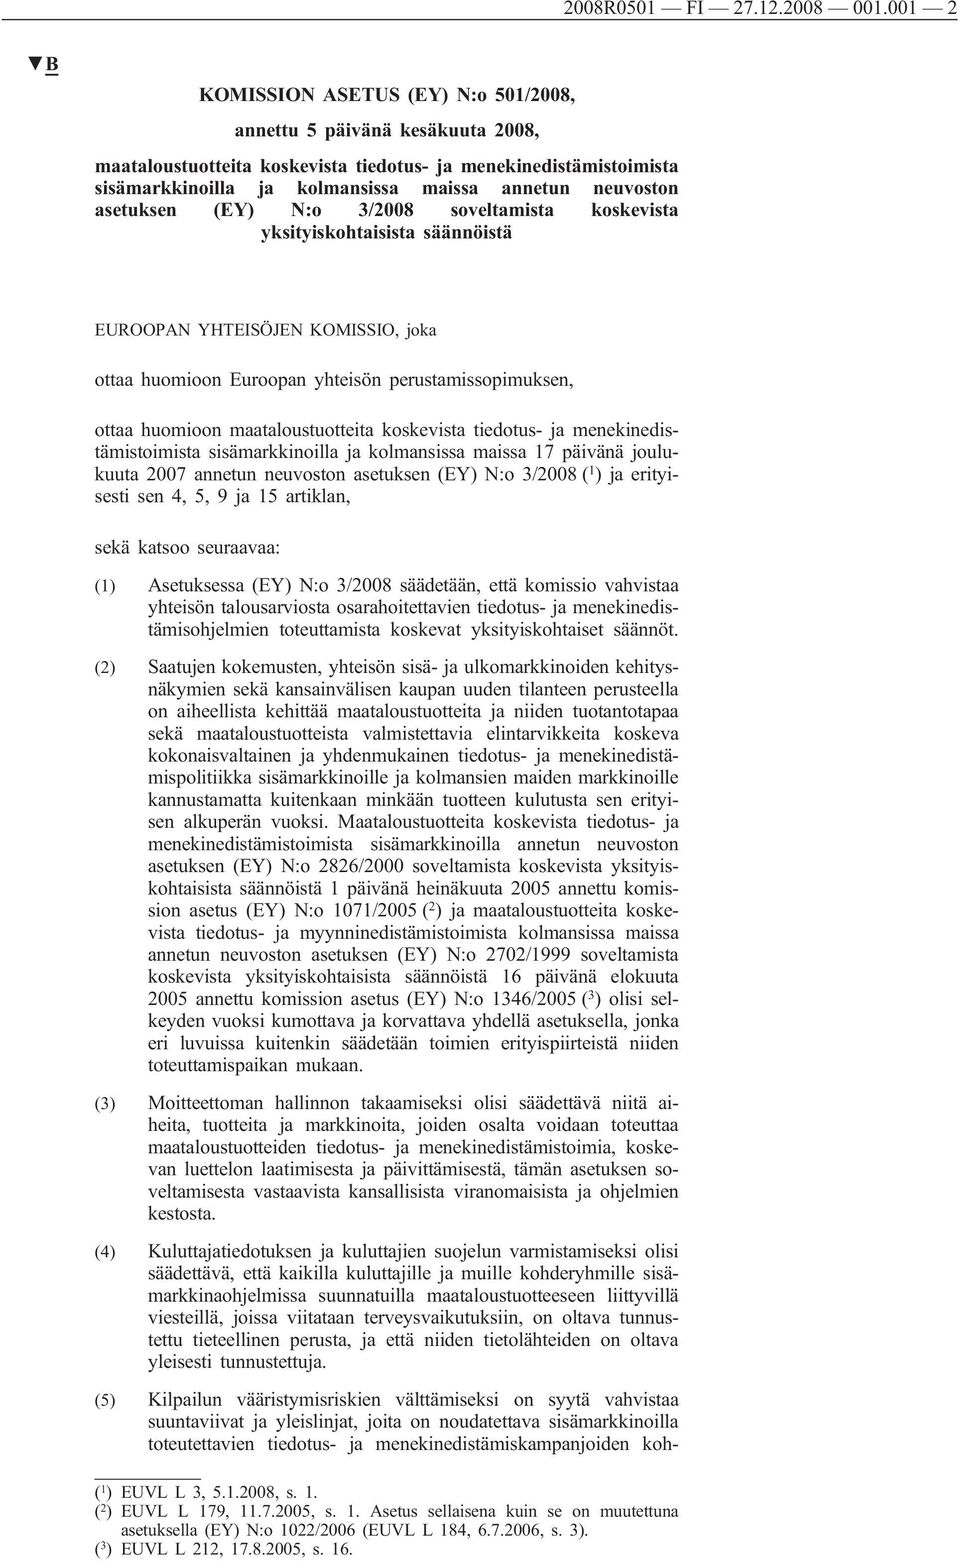 neuvoston asetuksen (EY) N:o 3/2008 soveltamista koskevista yksityiskohtaisista säännöistä EUROOPAN YHTEISÖJEN KOMISSIO, joka ottaa huomioon Euroopan yhteisön perustamissopimuksen, ottaa huomioon